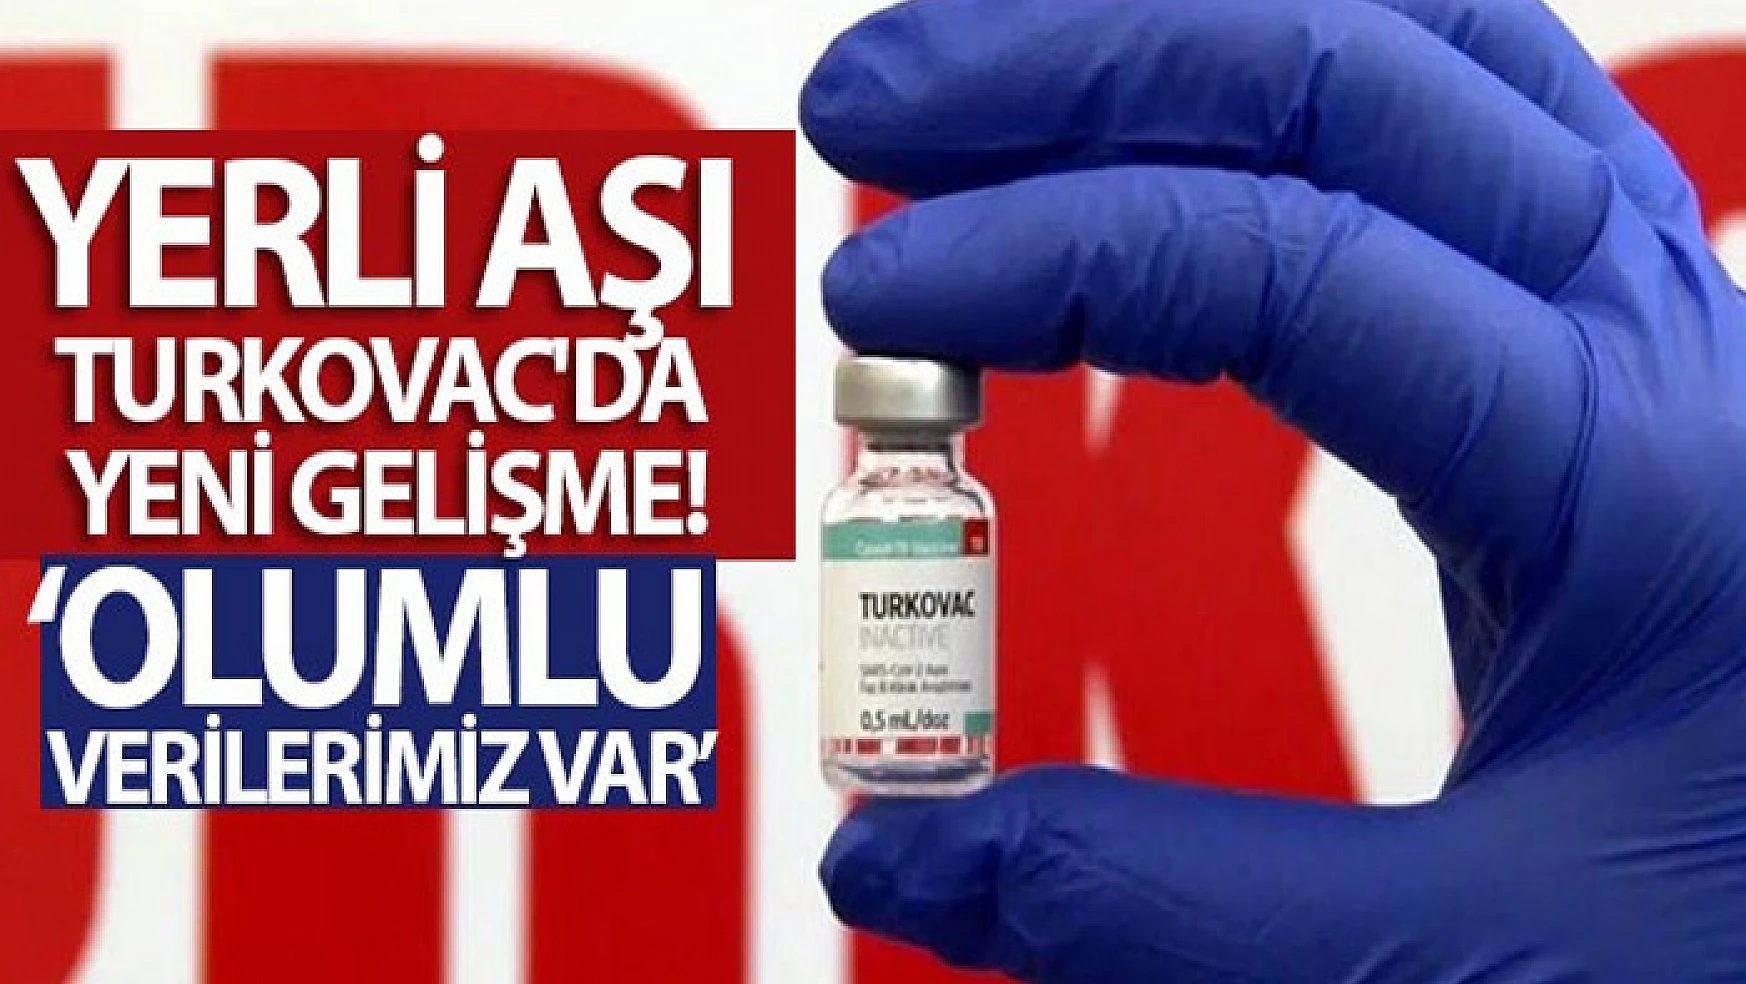 Yerli Covid-19 aşısı Turkovac'da önemli gelişme